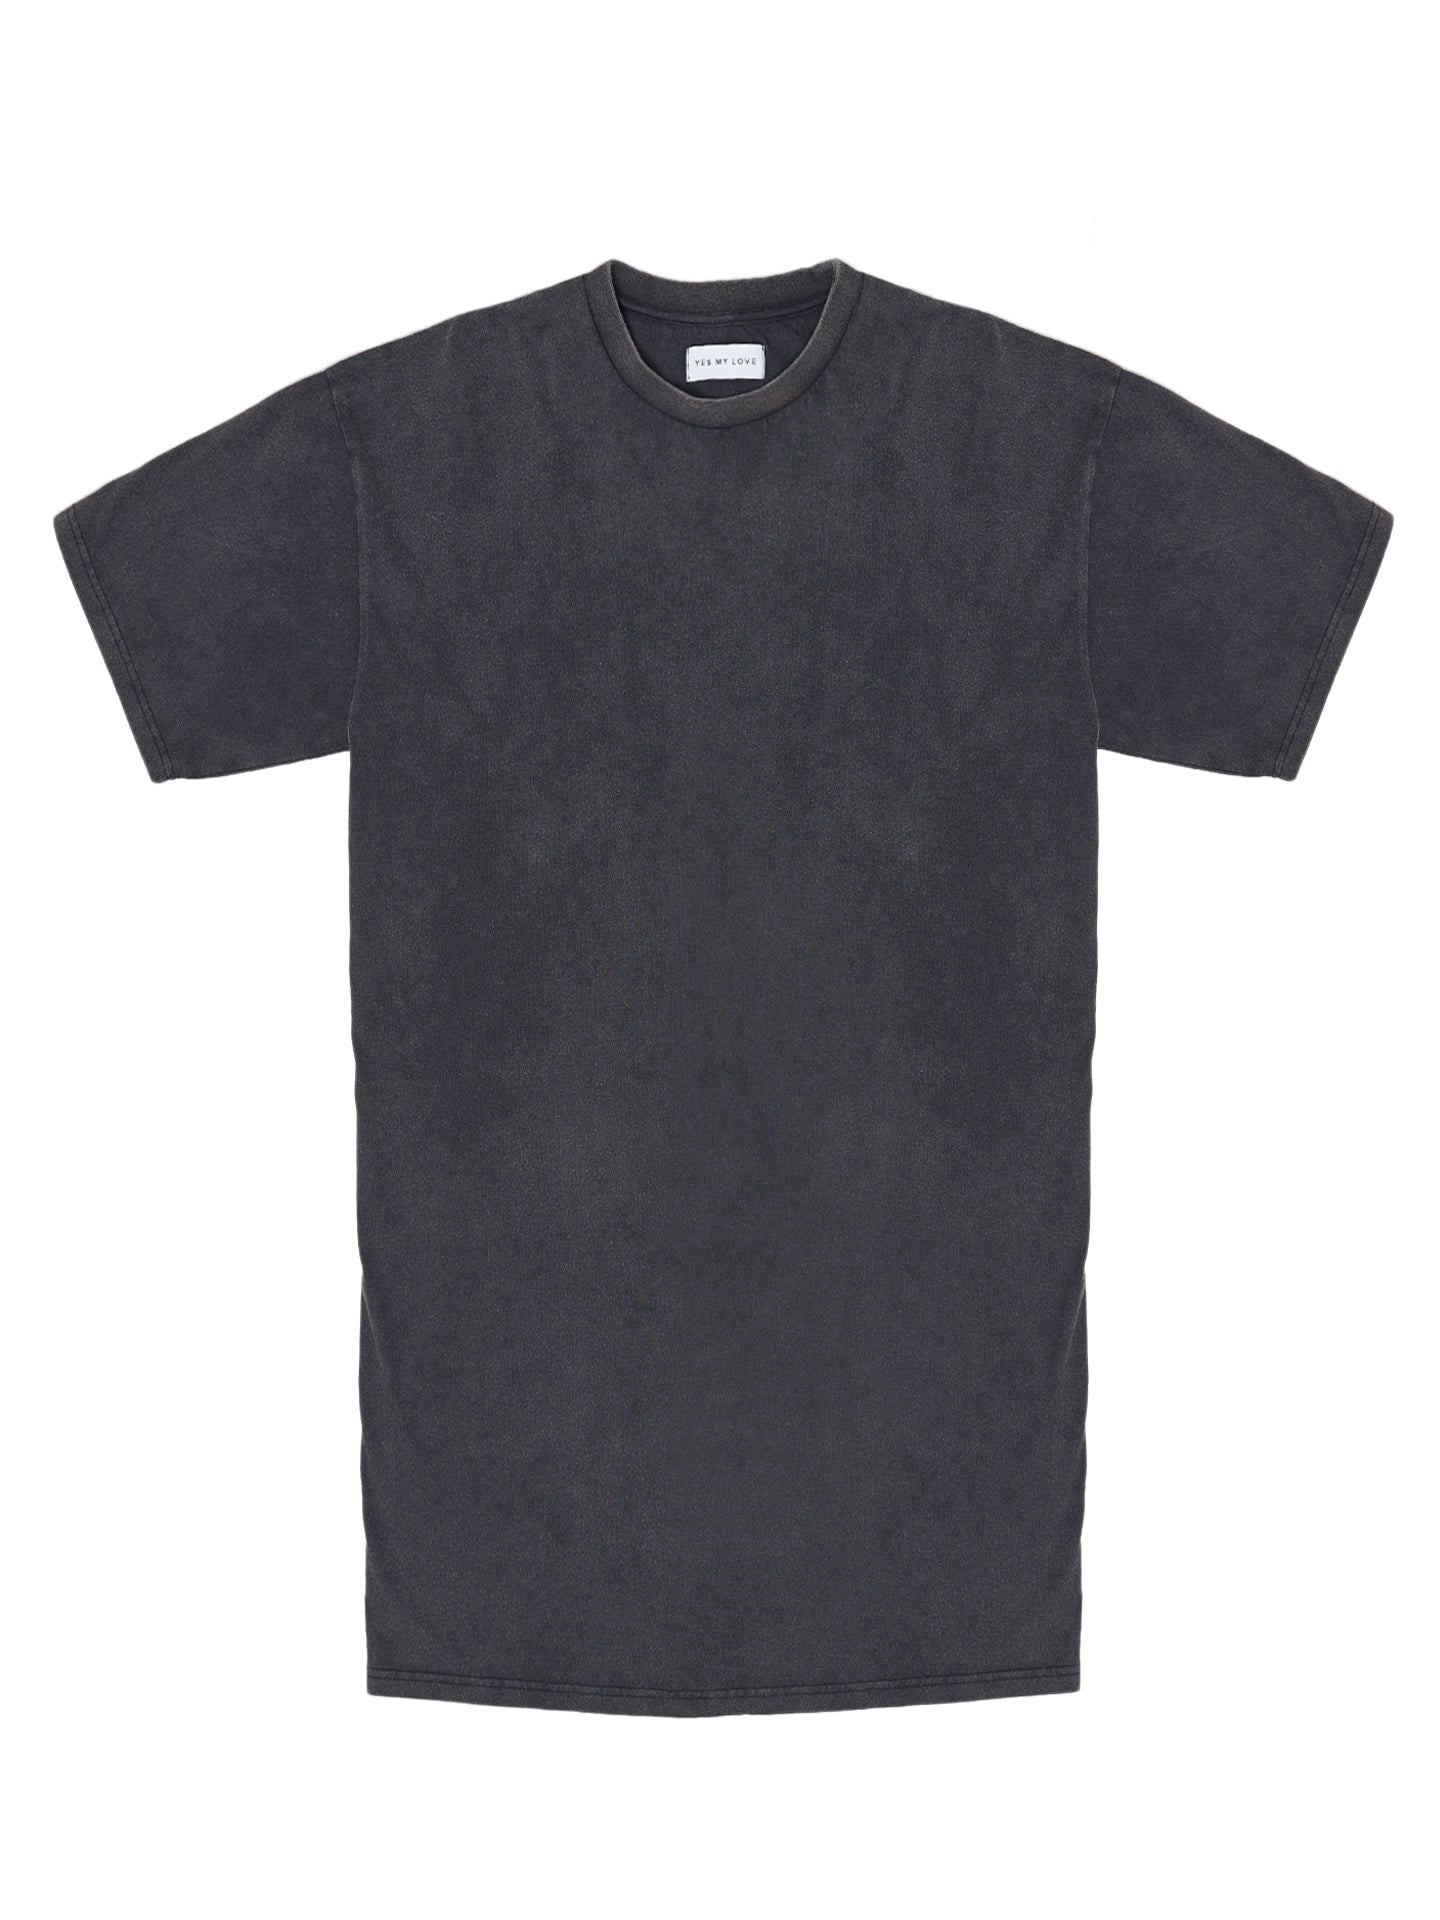 T-Shirt Kleid - vintage schwarz